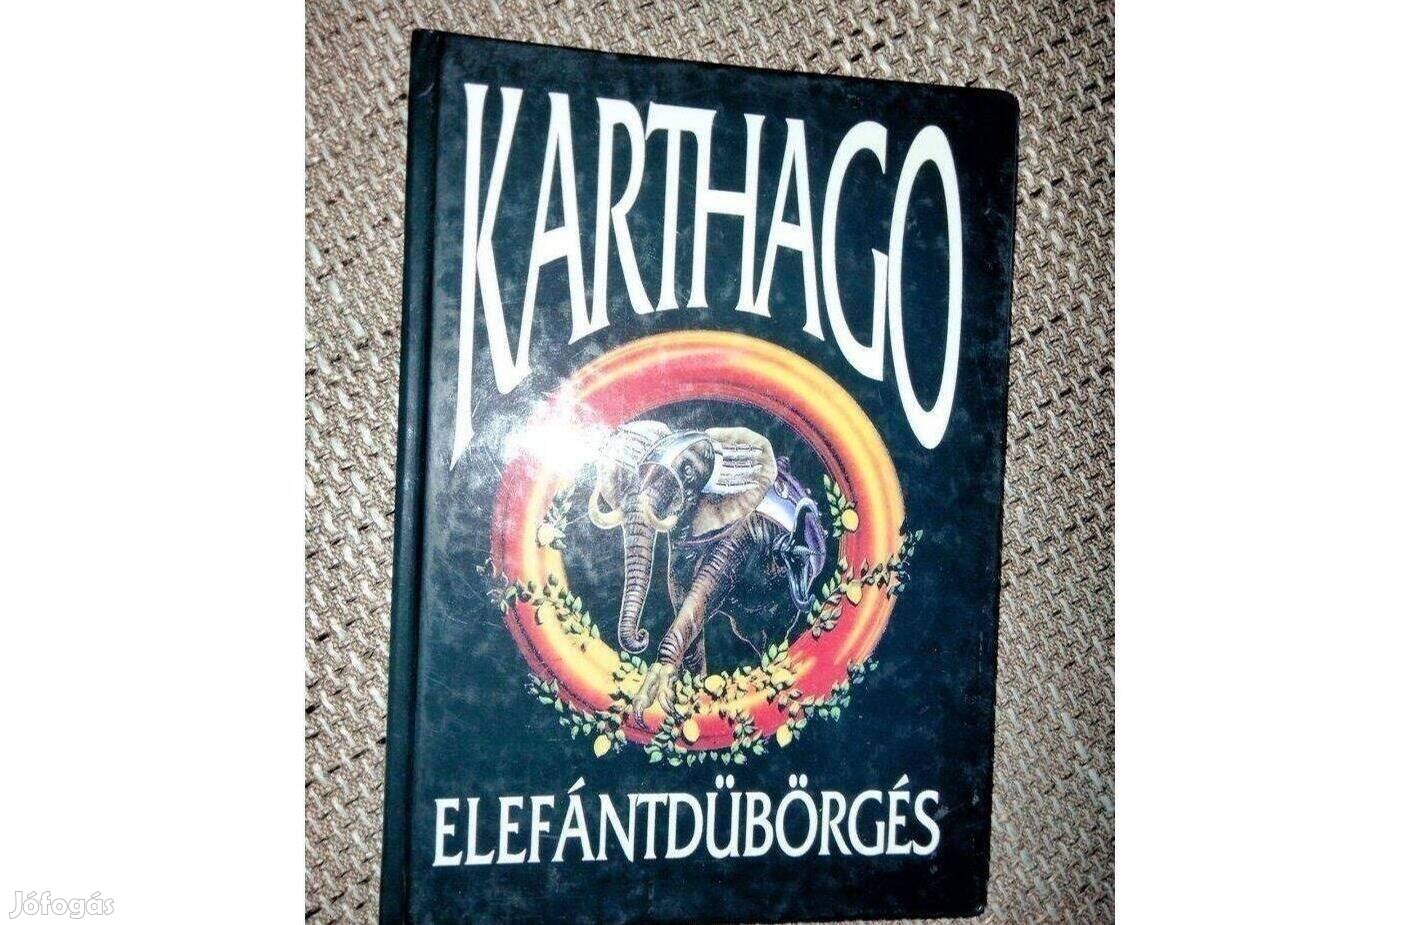 Karthago - Elefántdübörgés (sztorik a Karthago együttes életéből)